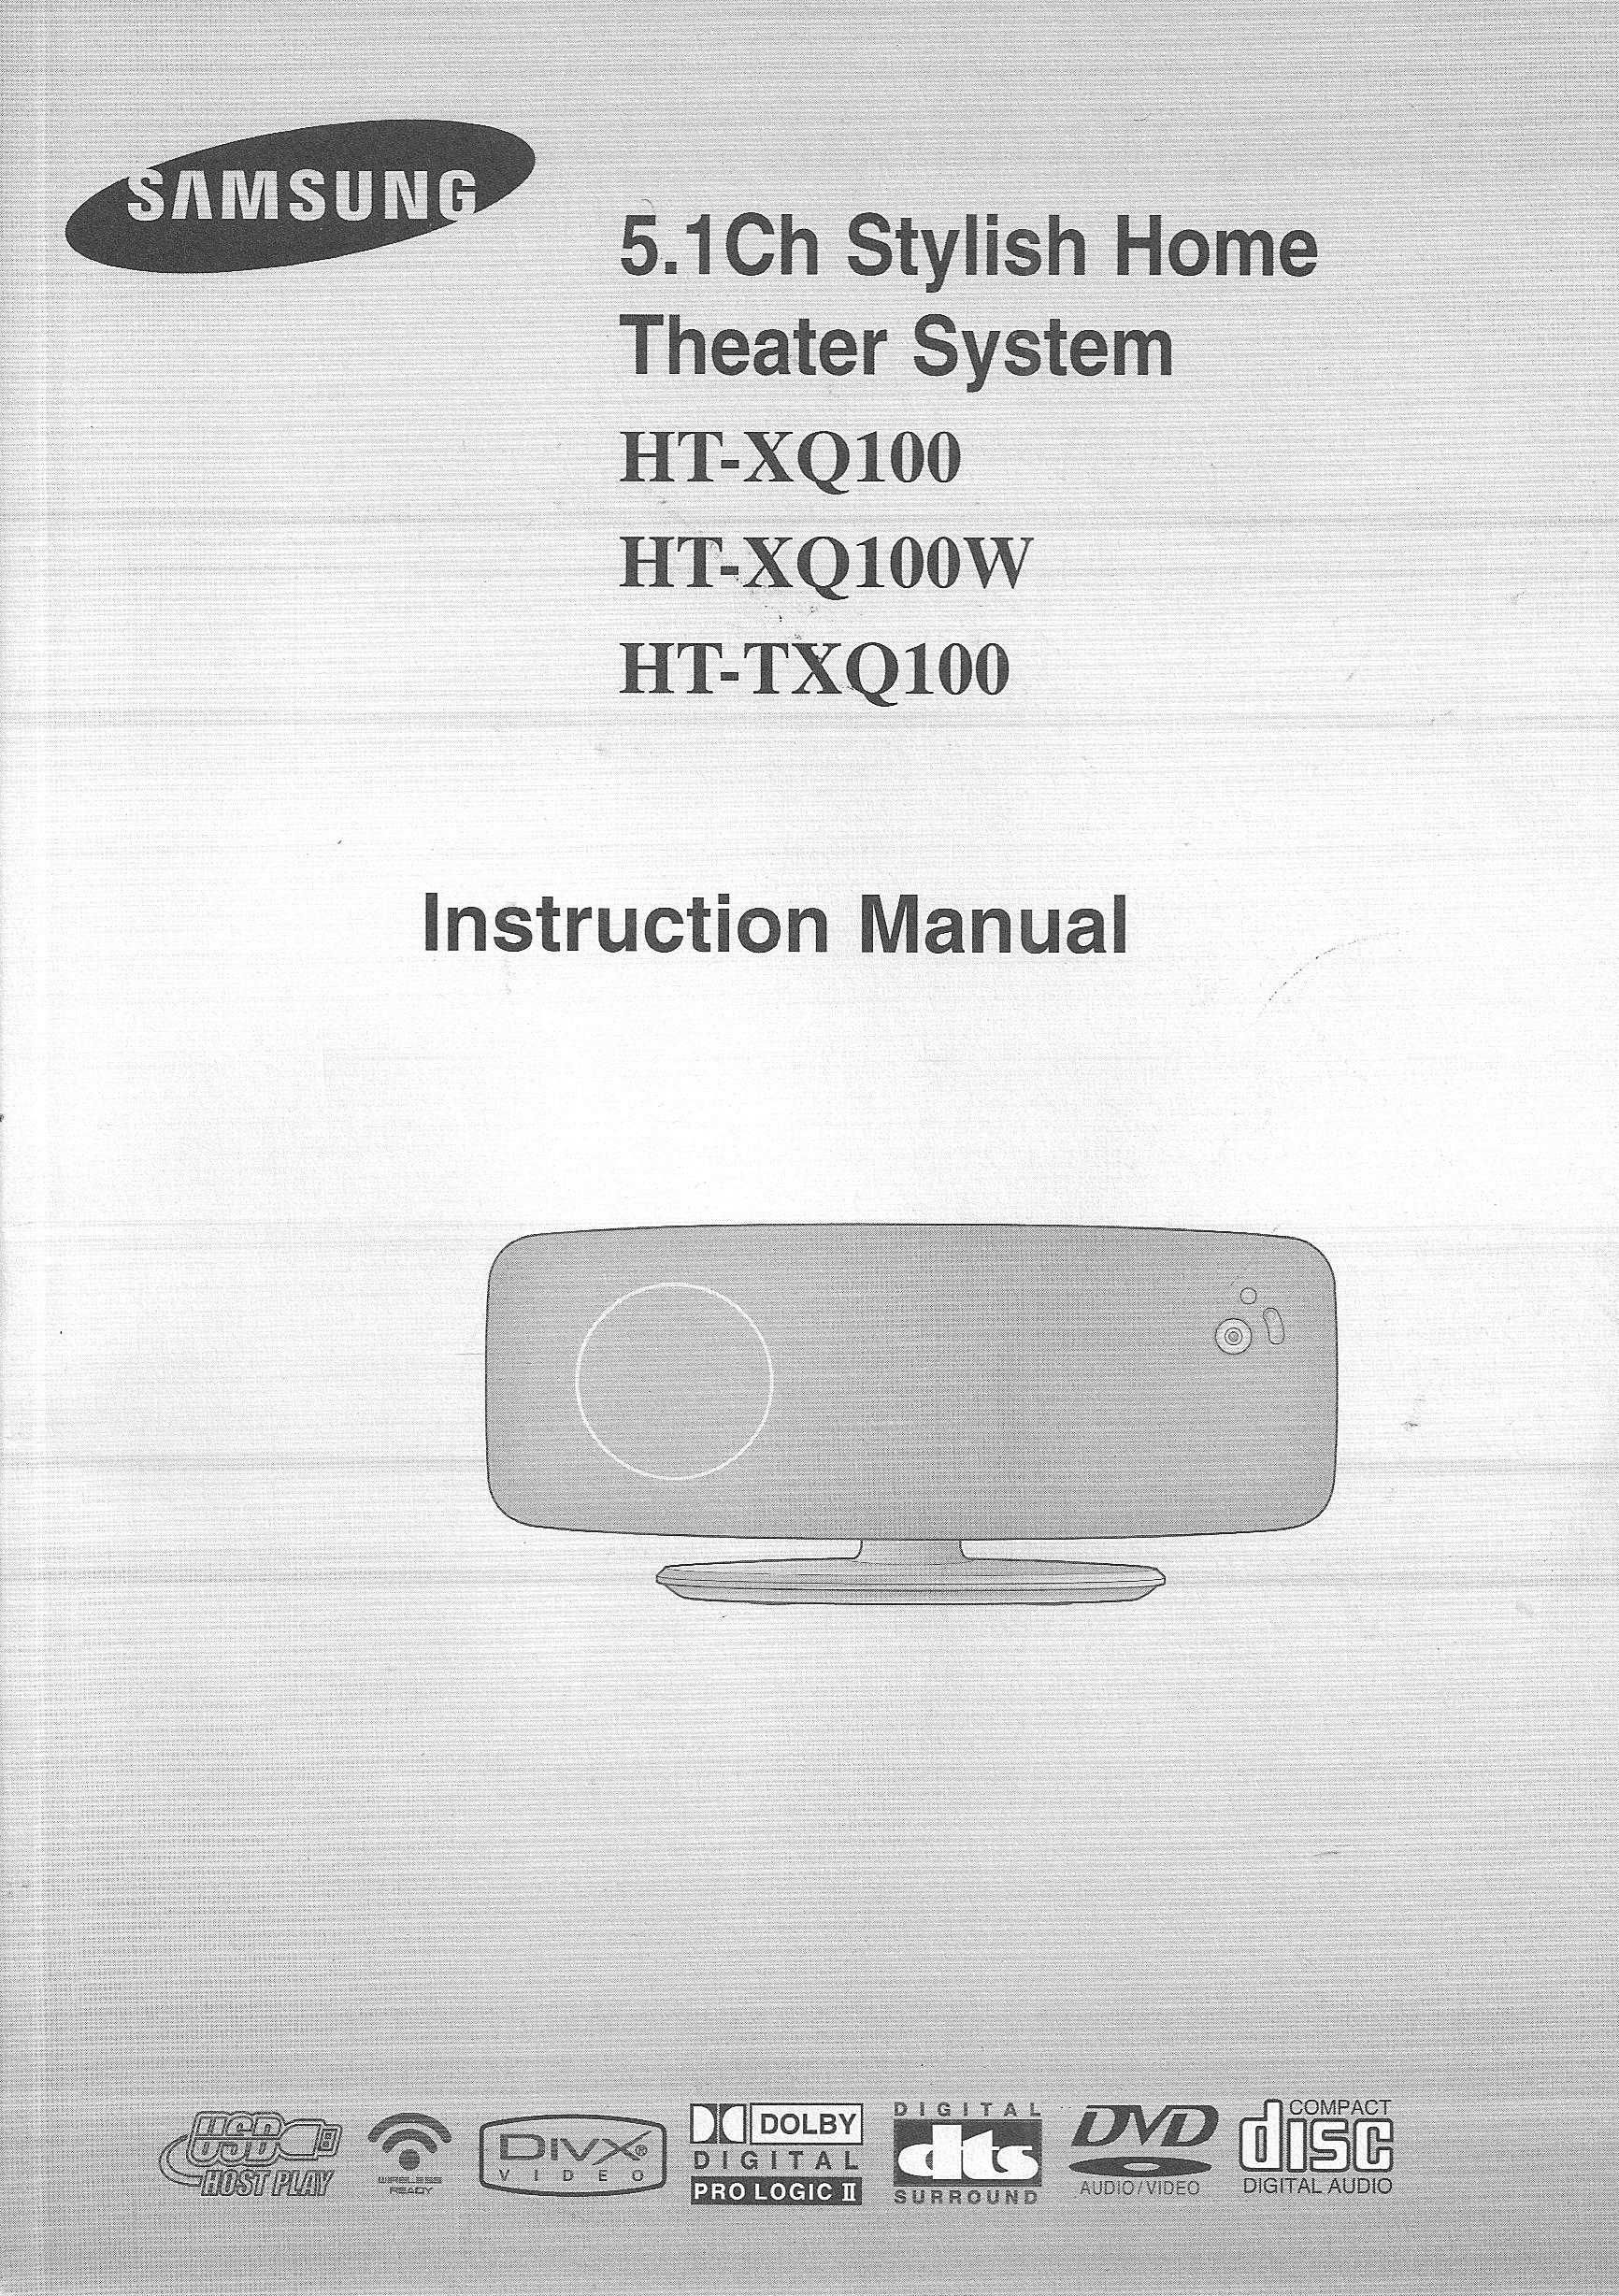 Samsung HT-XQ100 HT-XQ100W HT-TXQ100 instrukcja obsługi